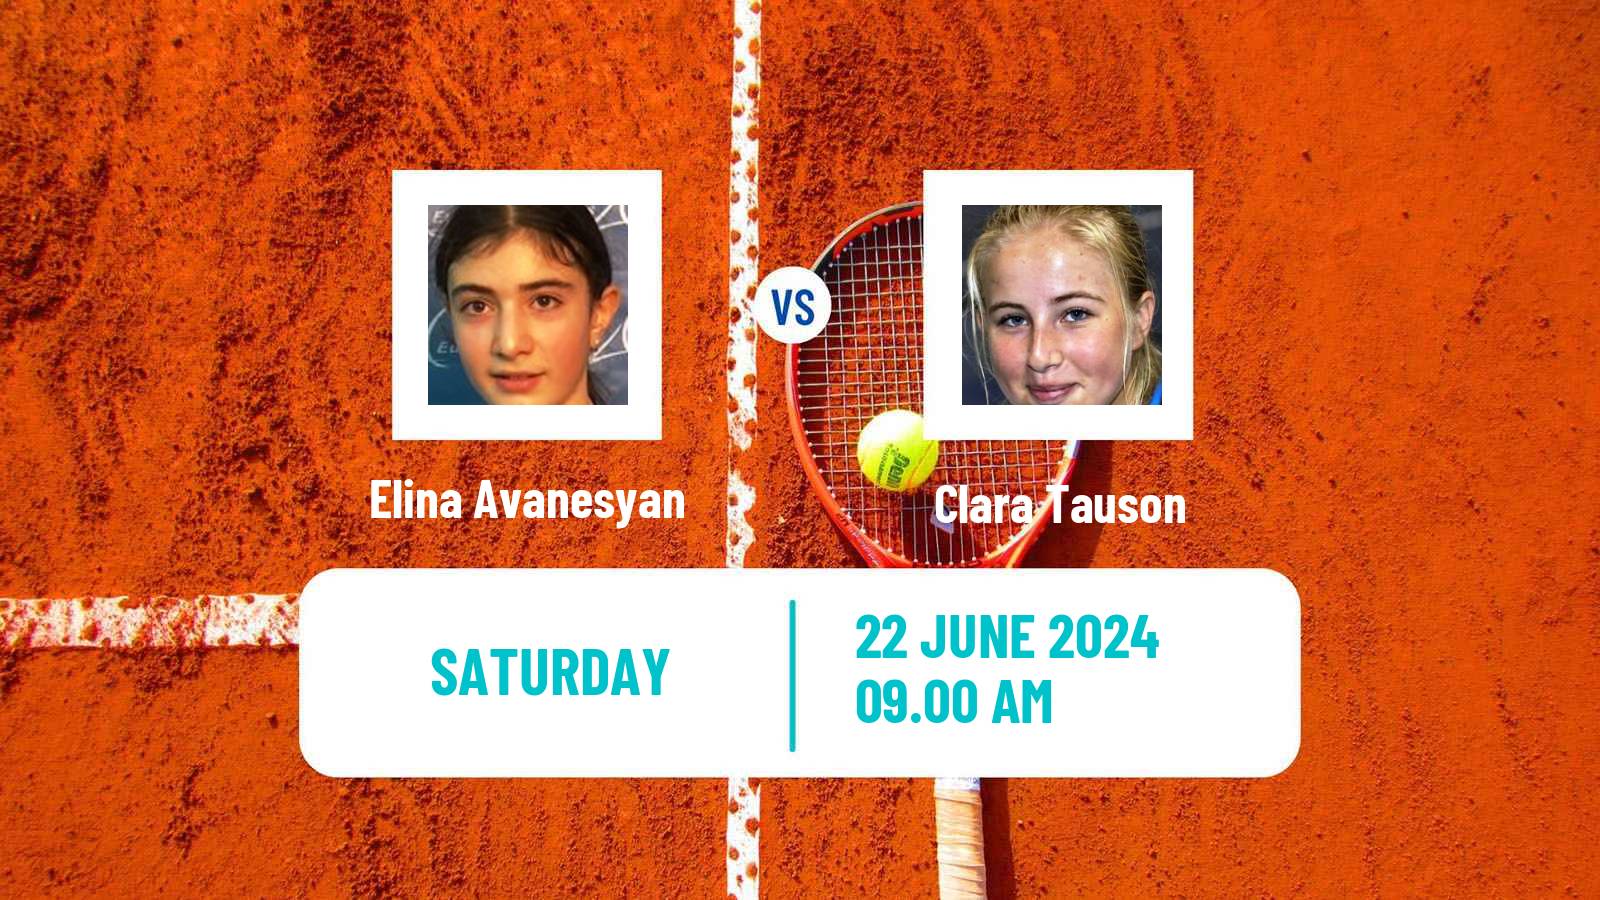 Tennis WTA Eastbourne Elina Avanesyan - Clara Tauson